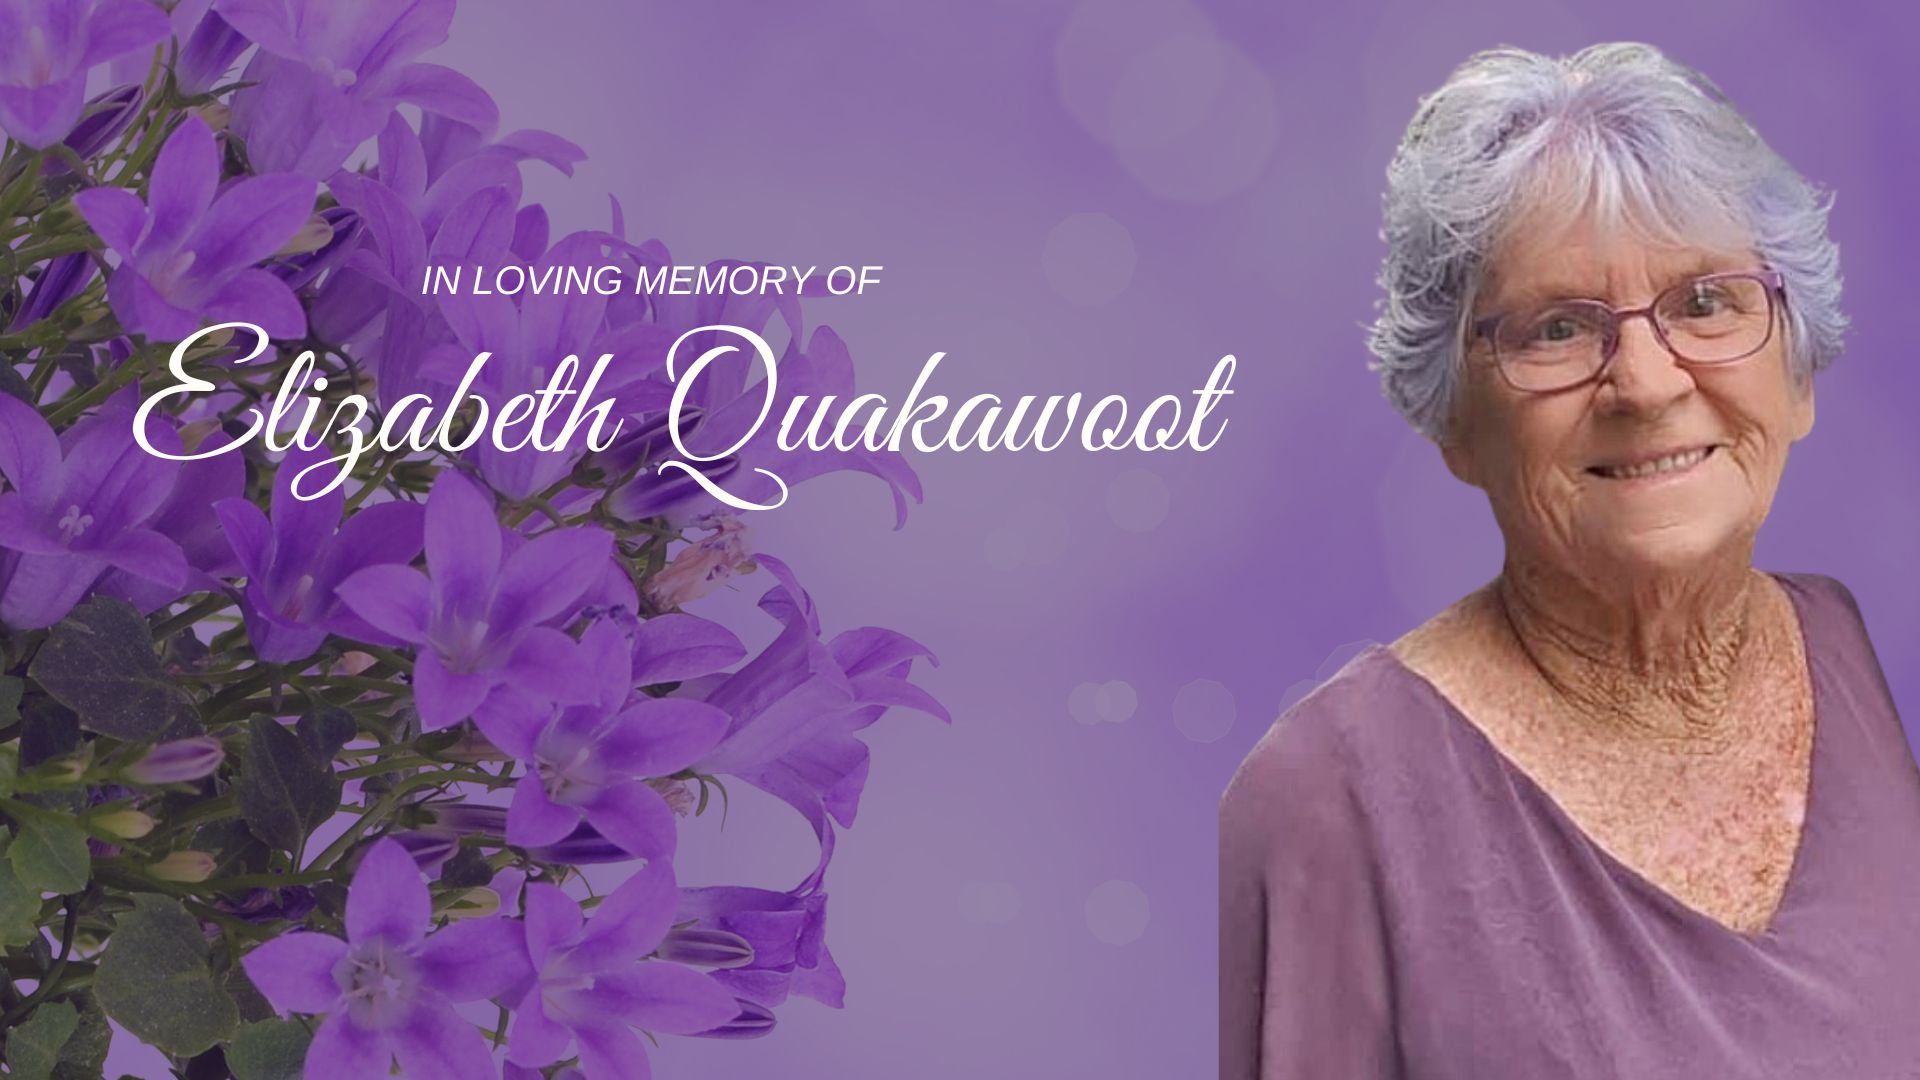 Elizabeth Quakawoot